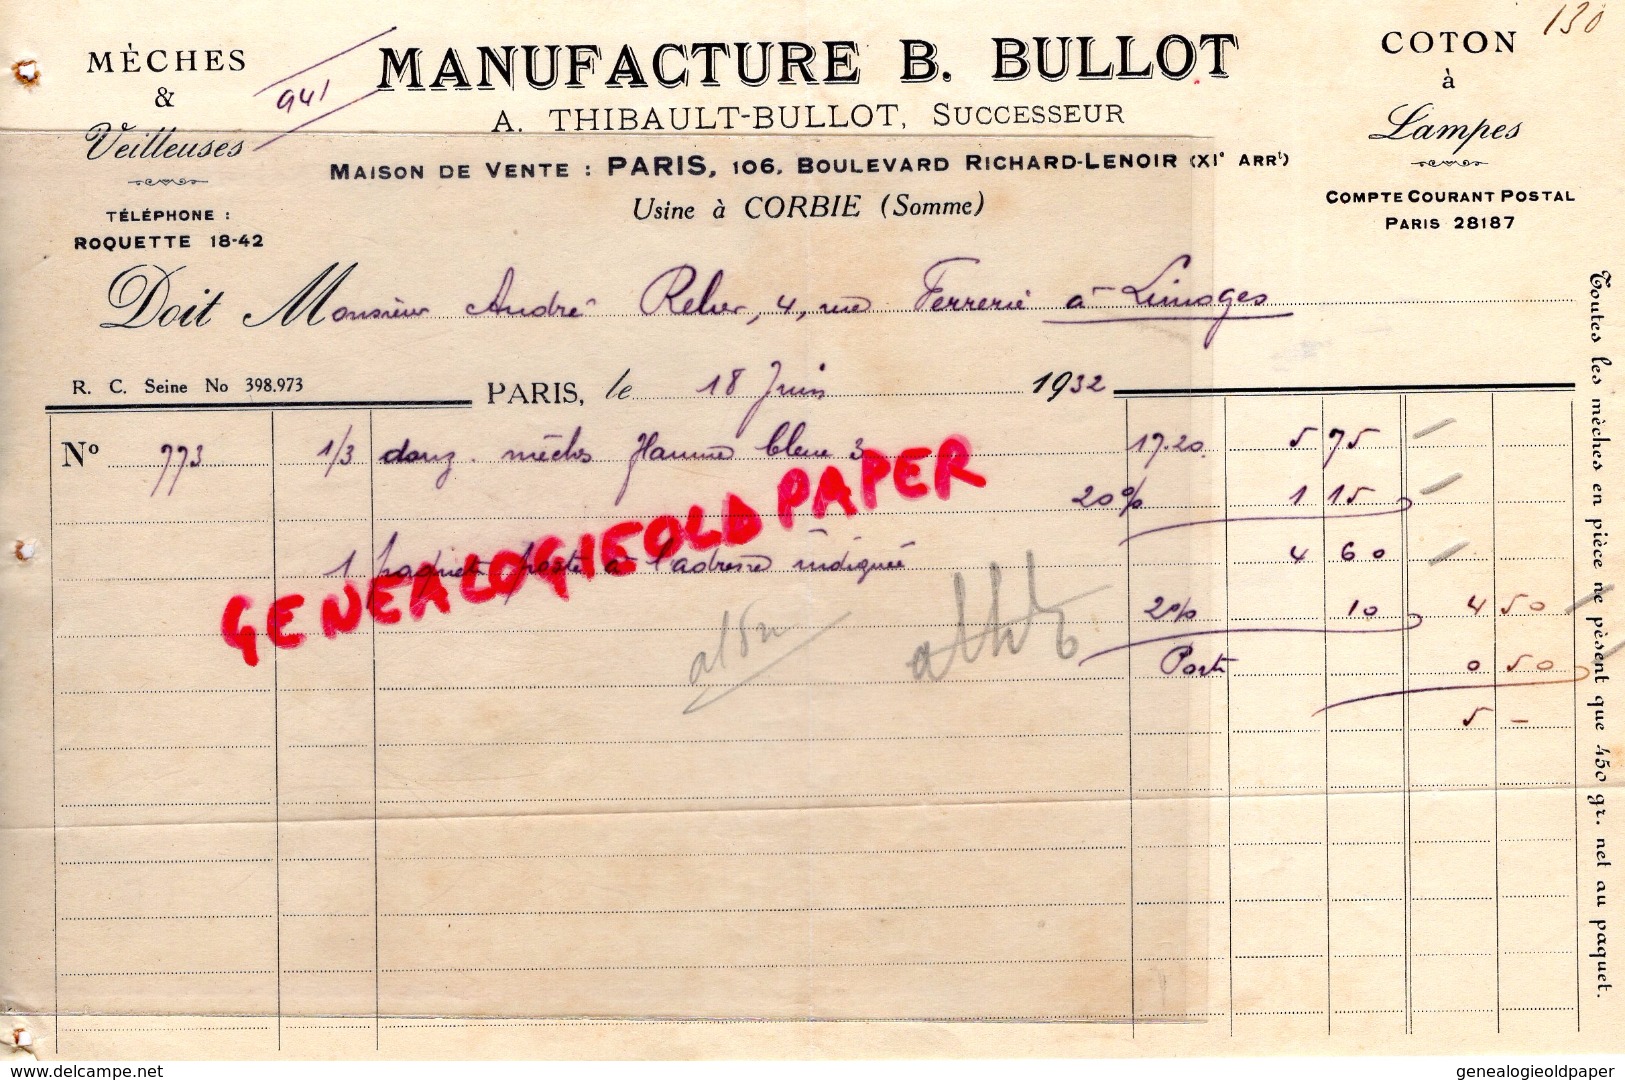 75 - PARIS -FACTURE MANUFACTURE B. BULLOT- A.THIBAULT-BULLOT- USINE A CORBIE- 106 BD RICHARD LENOIR- COTON A LAMPES-1932 - 1900 – 1949